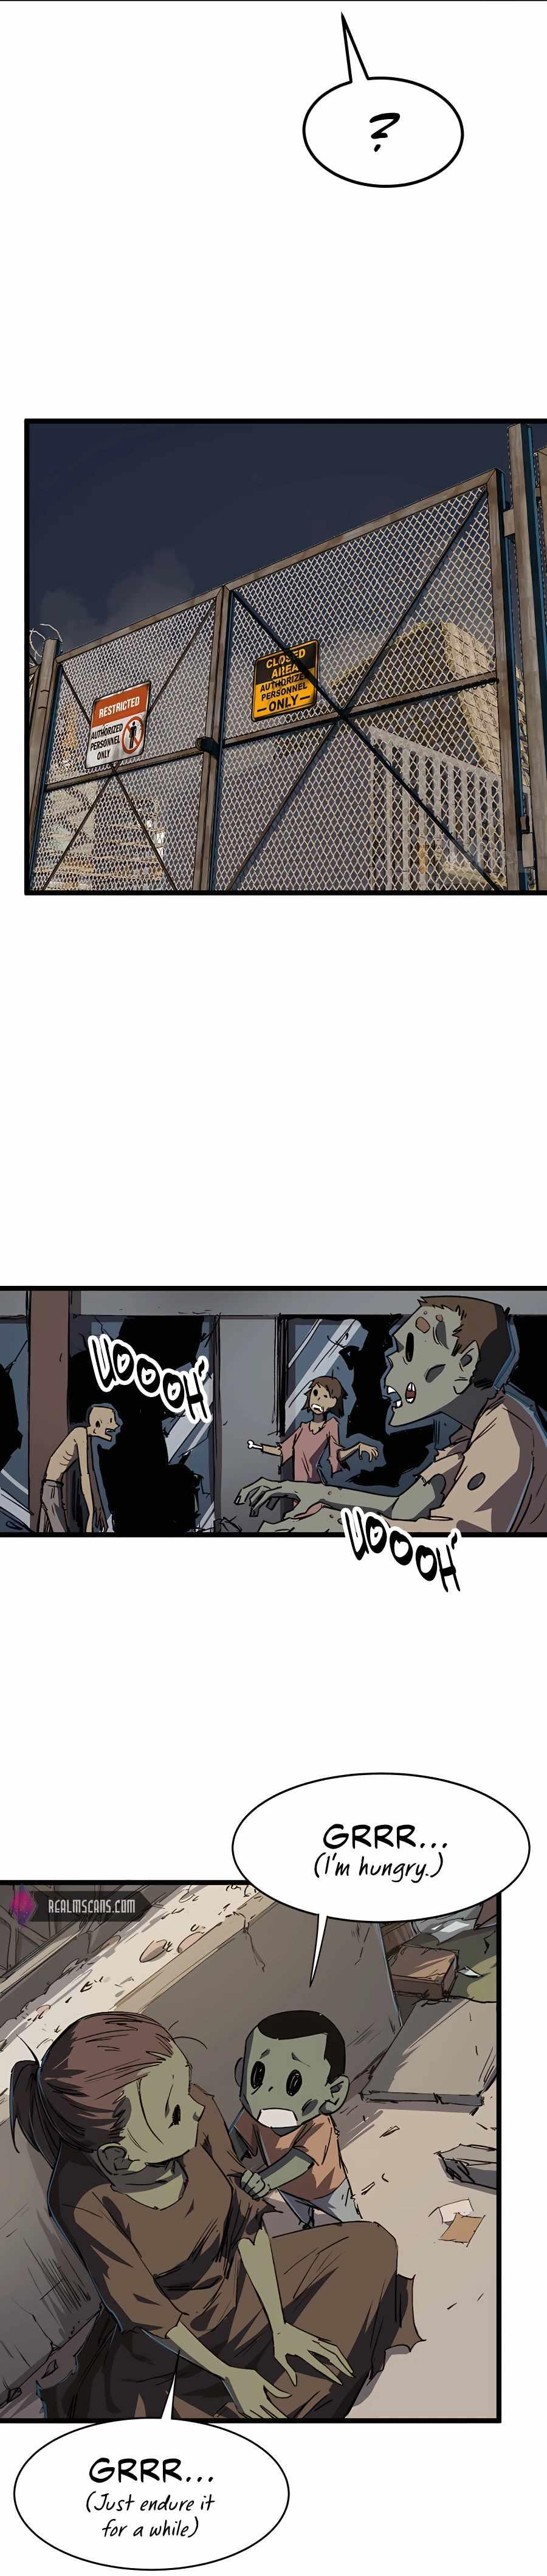 Mr. Zombie Chapter 2 page 9 - Mangakakalot